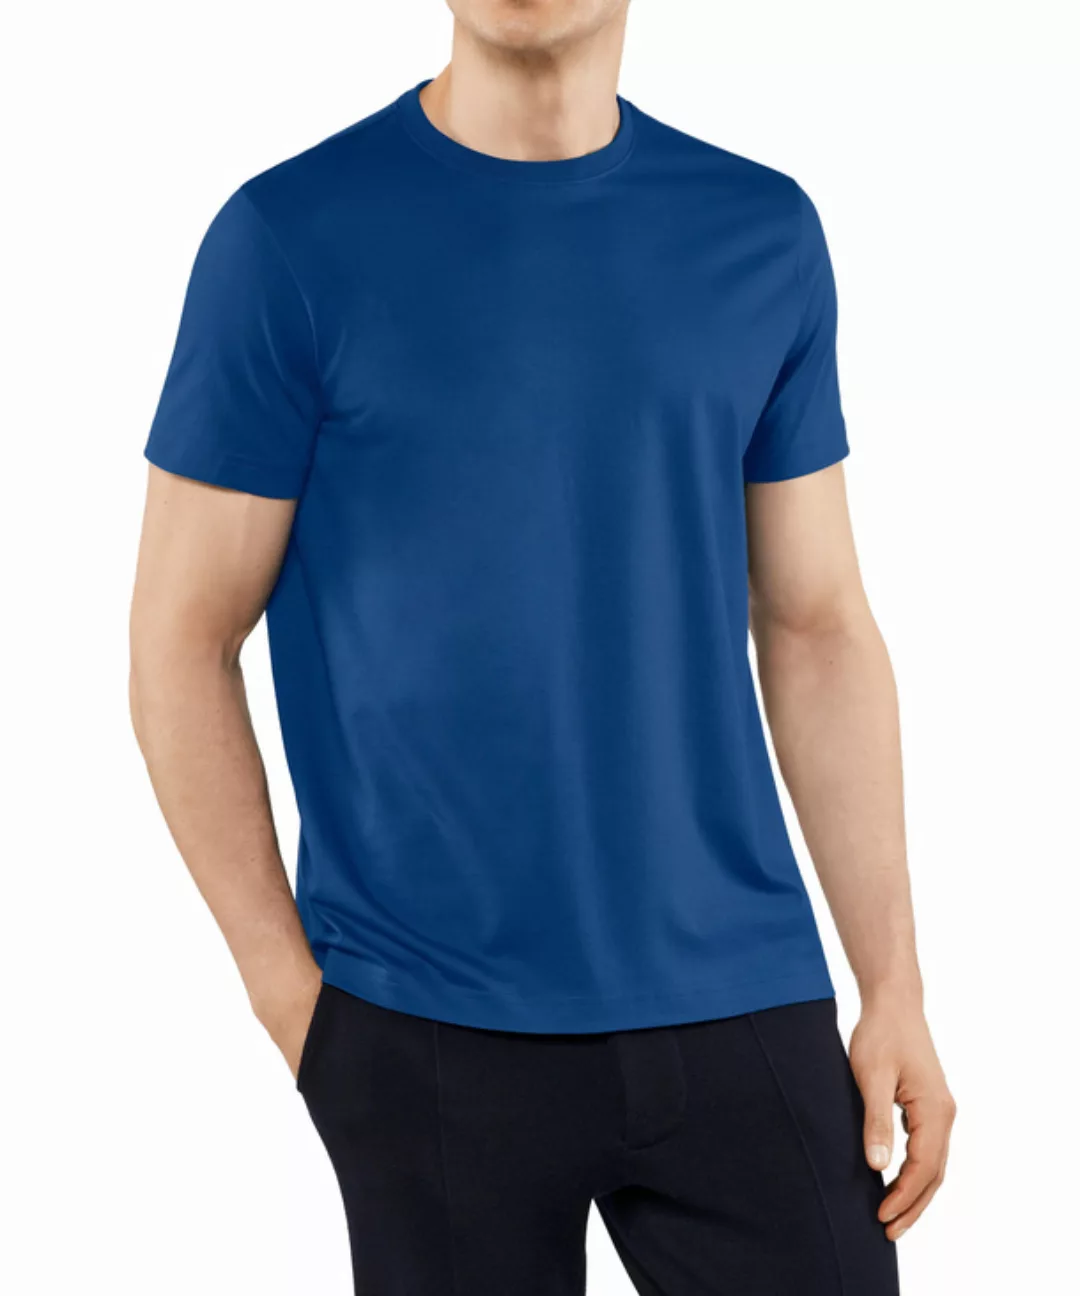 FALKE Herren T-Shirt Rundhals, Polo, M, Blau, Uni,Struktur, Baumwolle, 6210 günstig online kaufen